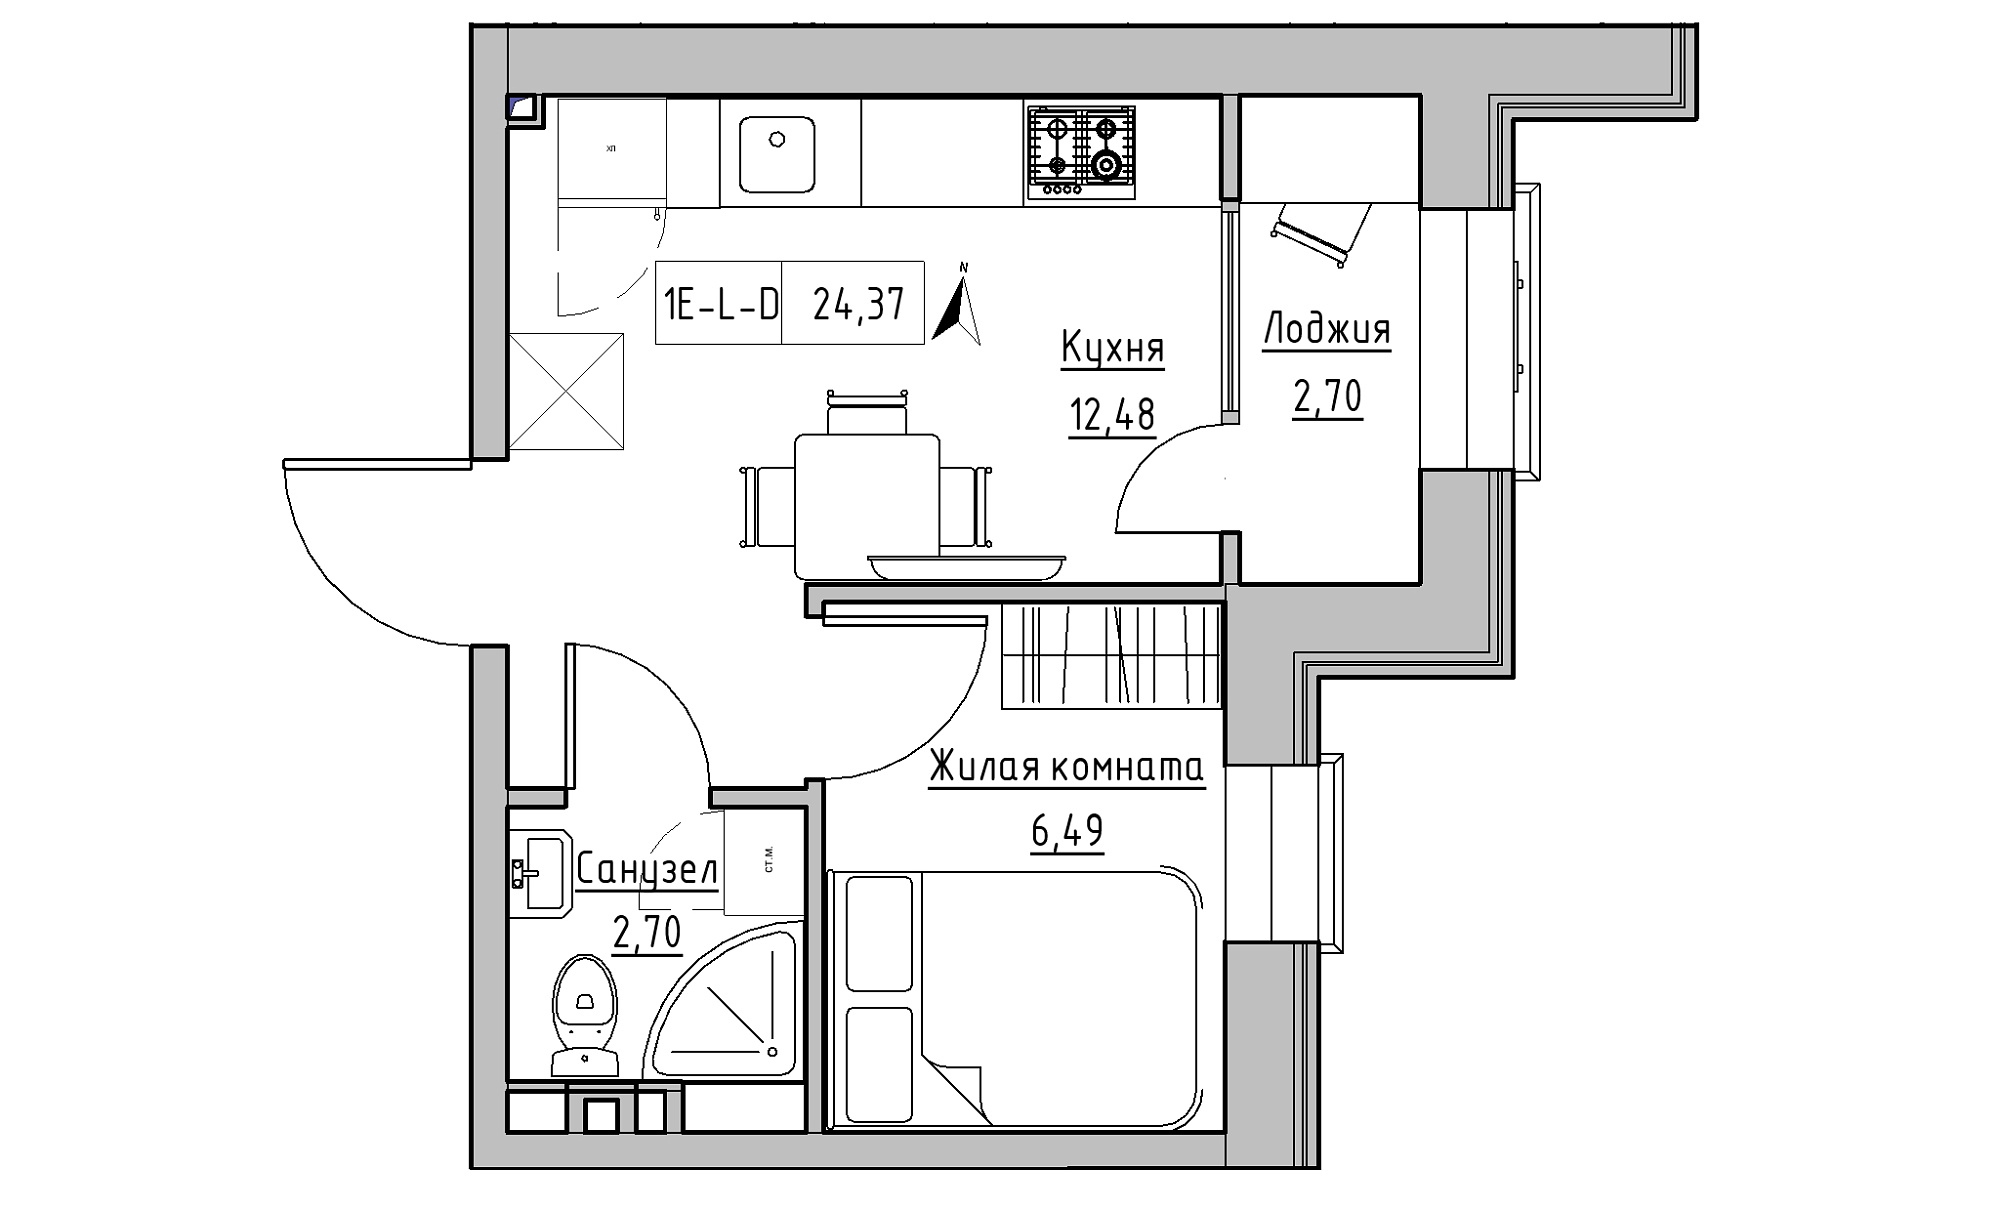 Планування 1-к квартира площею 24.37м2, KS-016-02/0015.